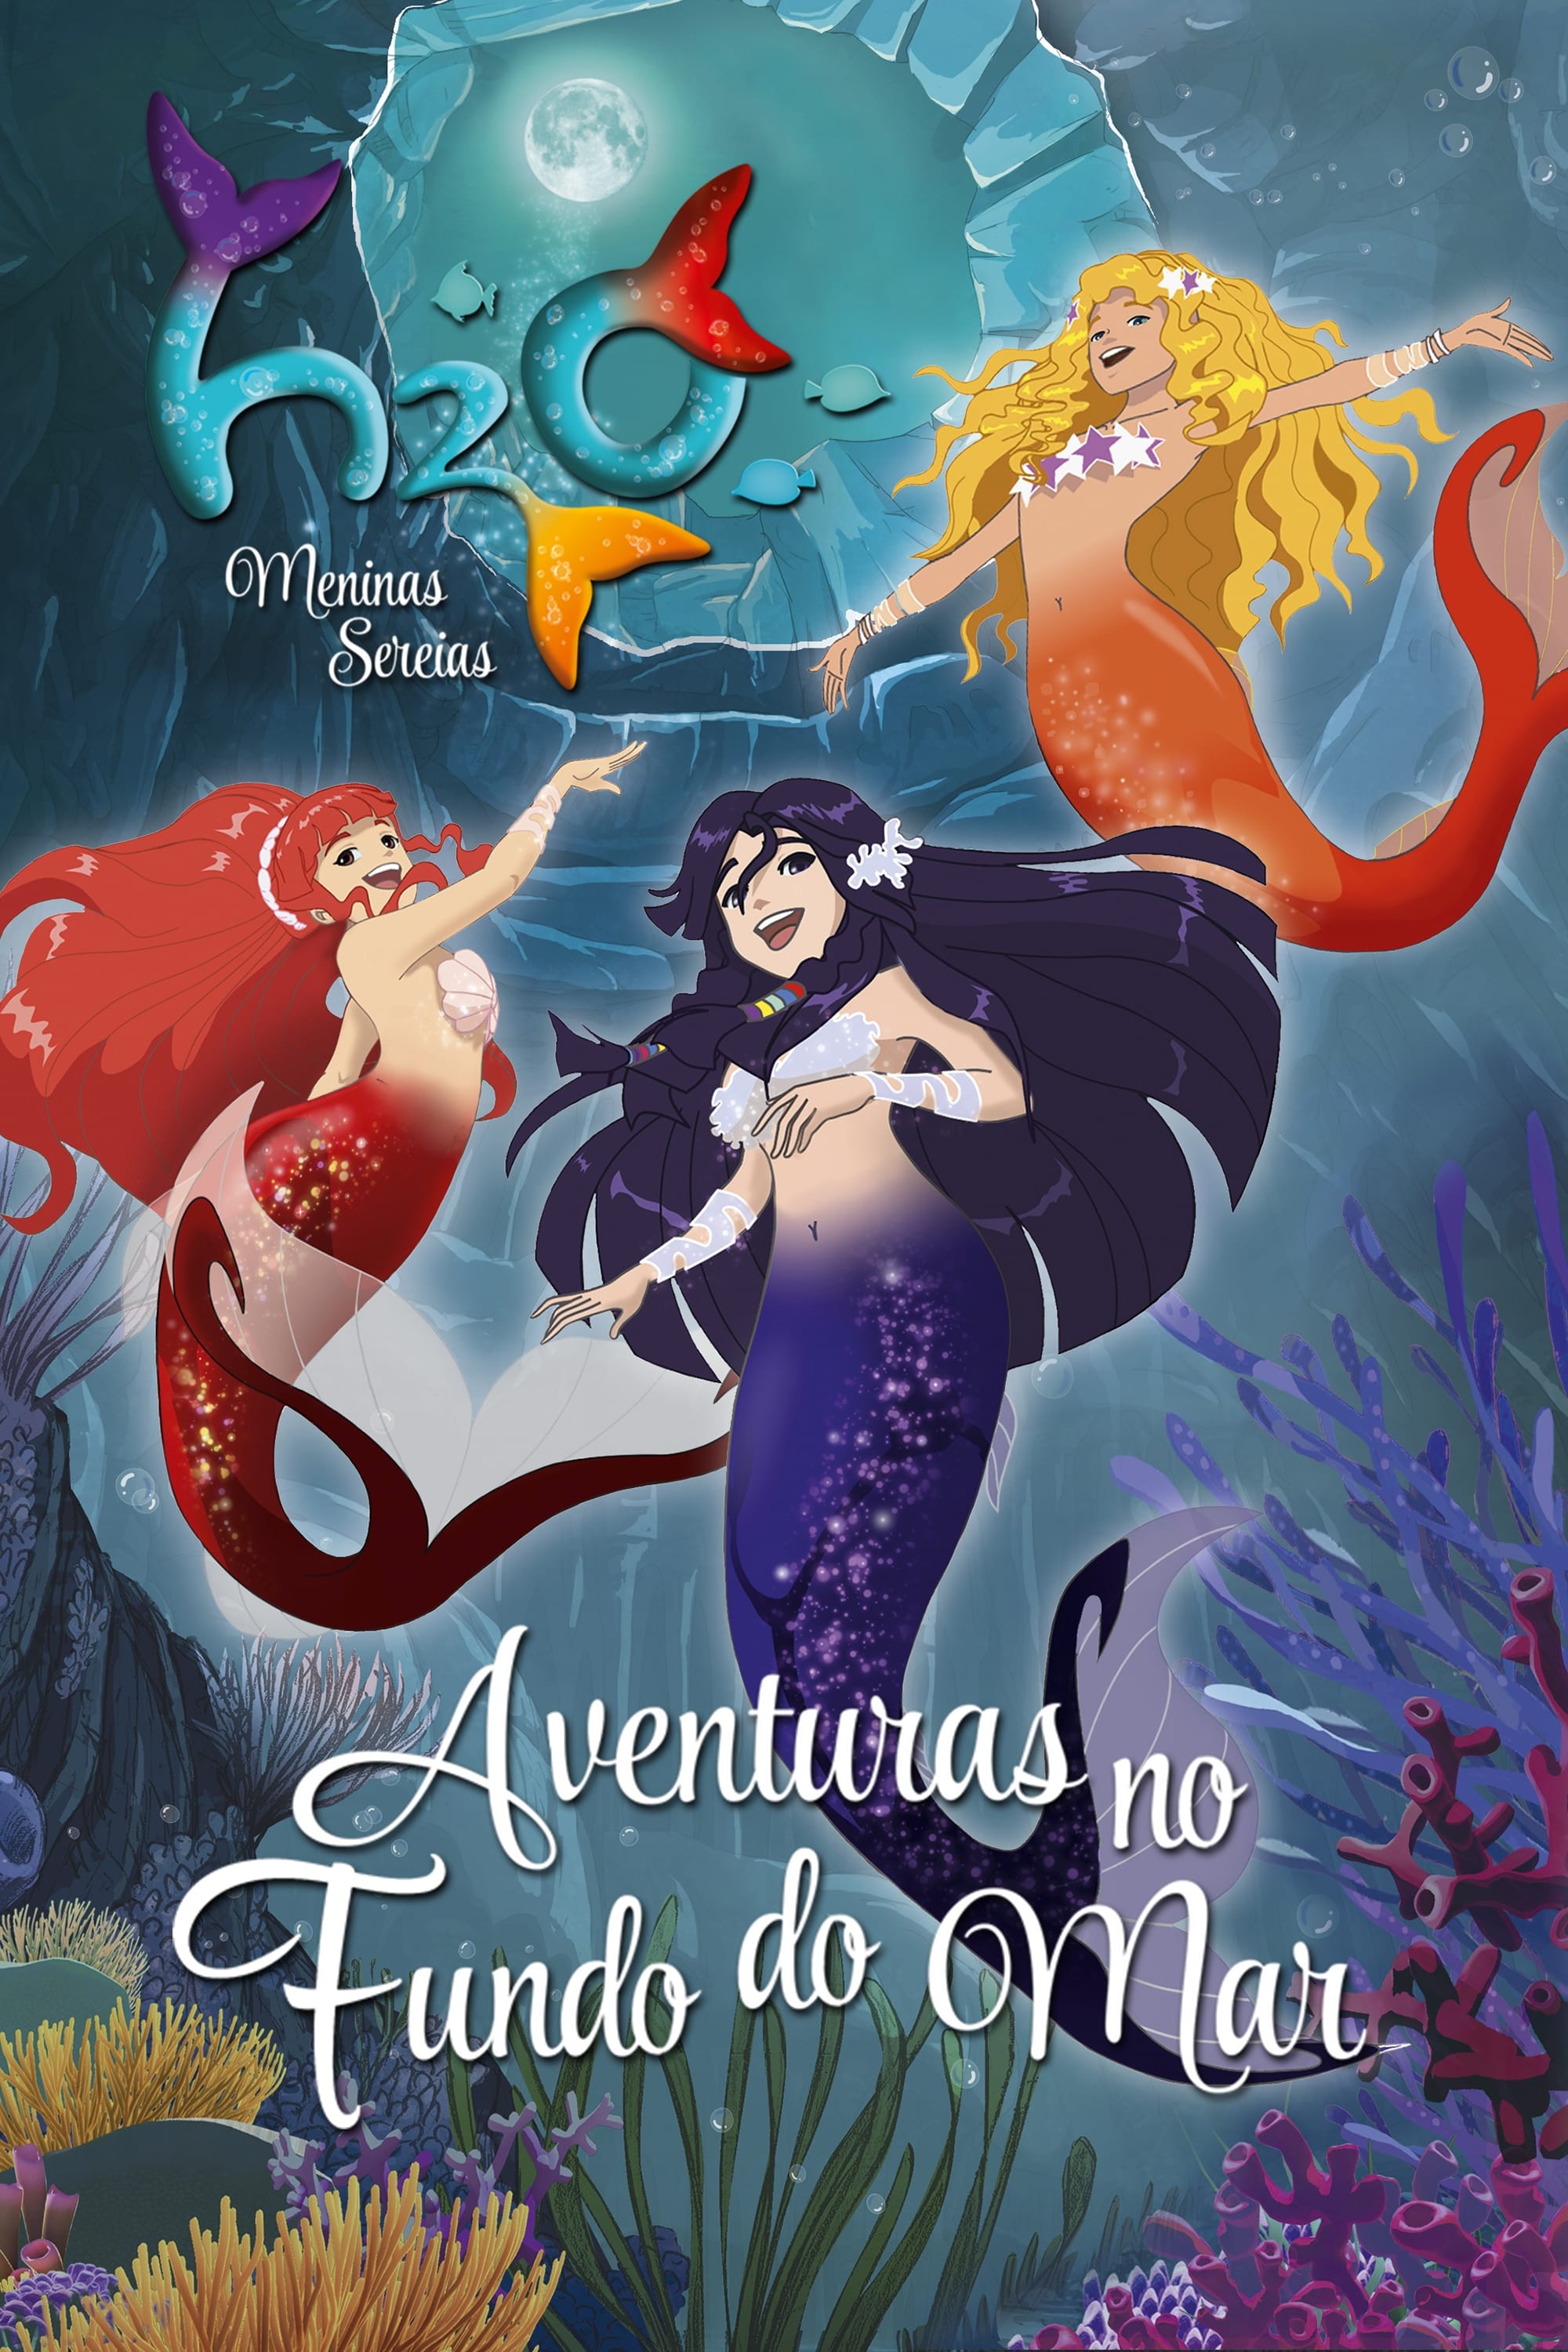 Mako Mermaids :An H2O Adventure - Coisas de sereias